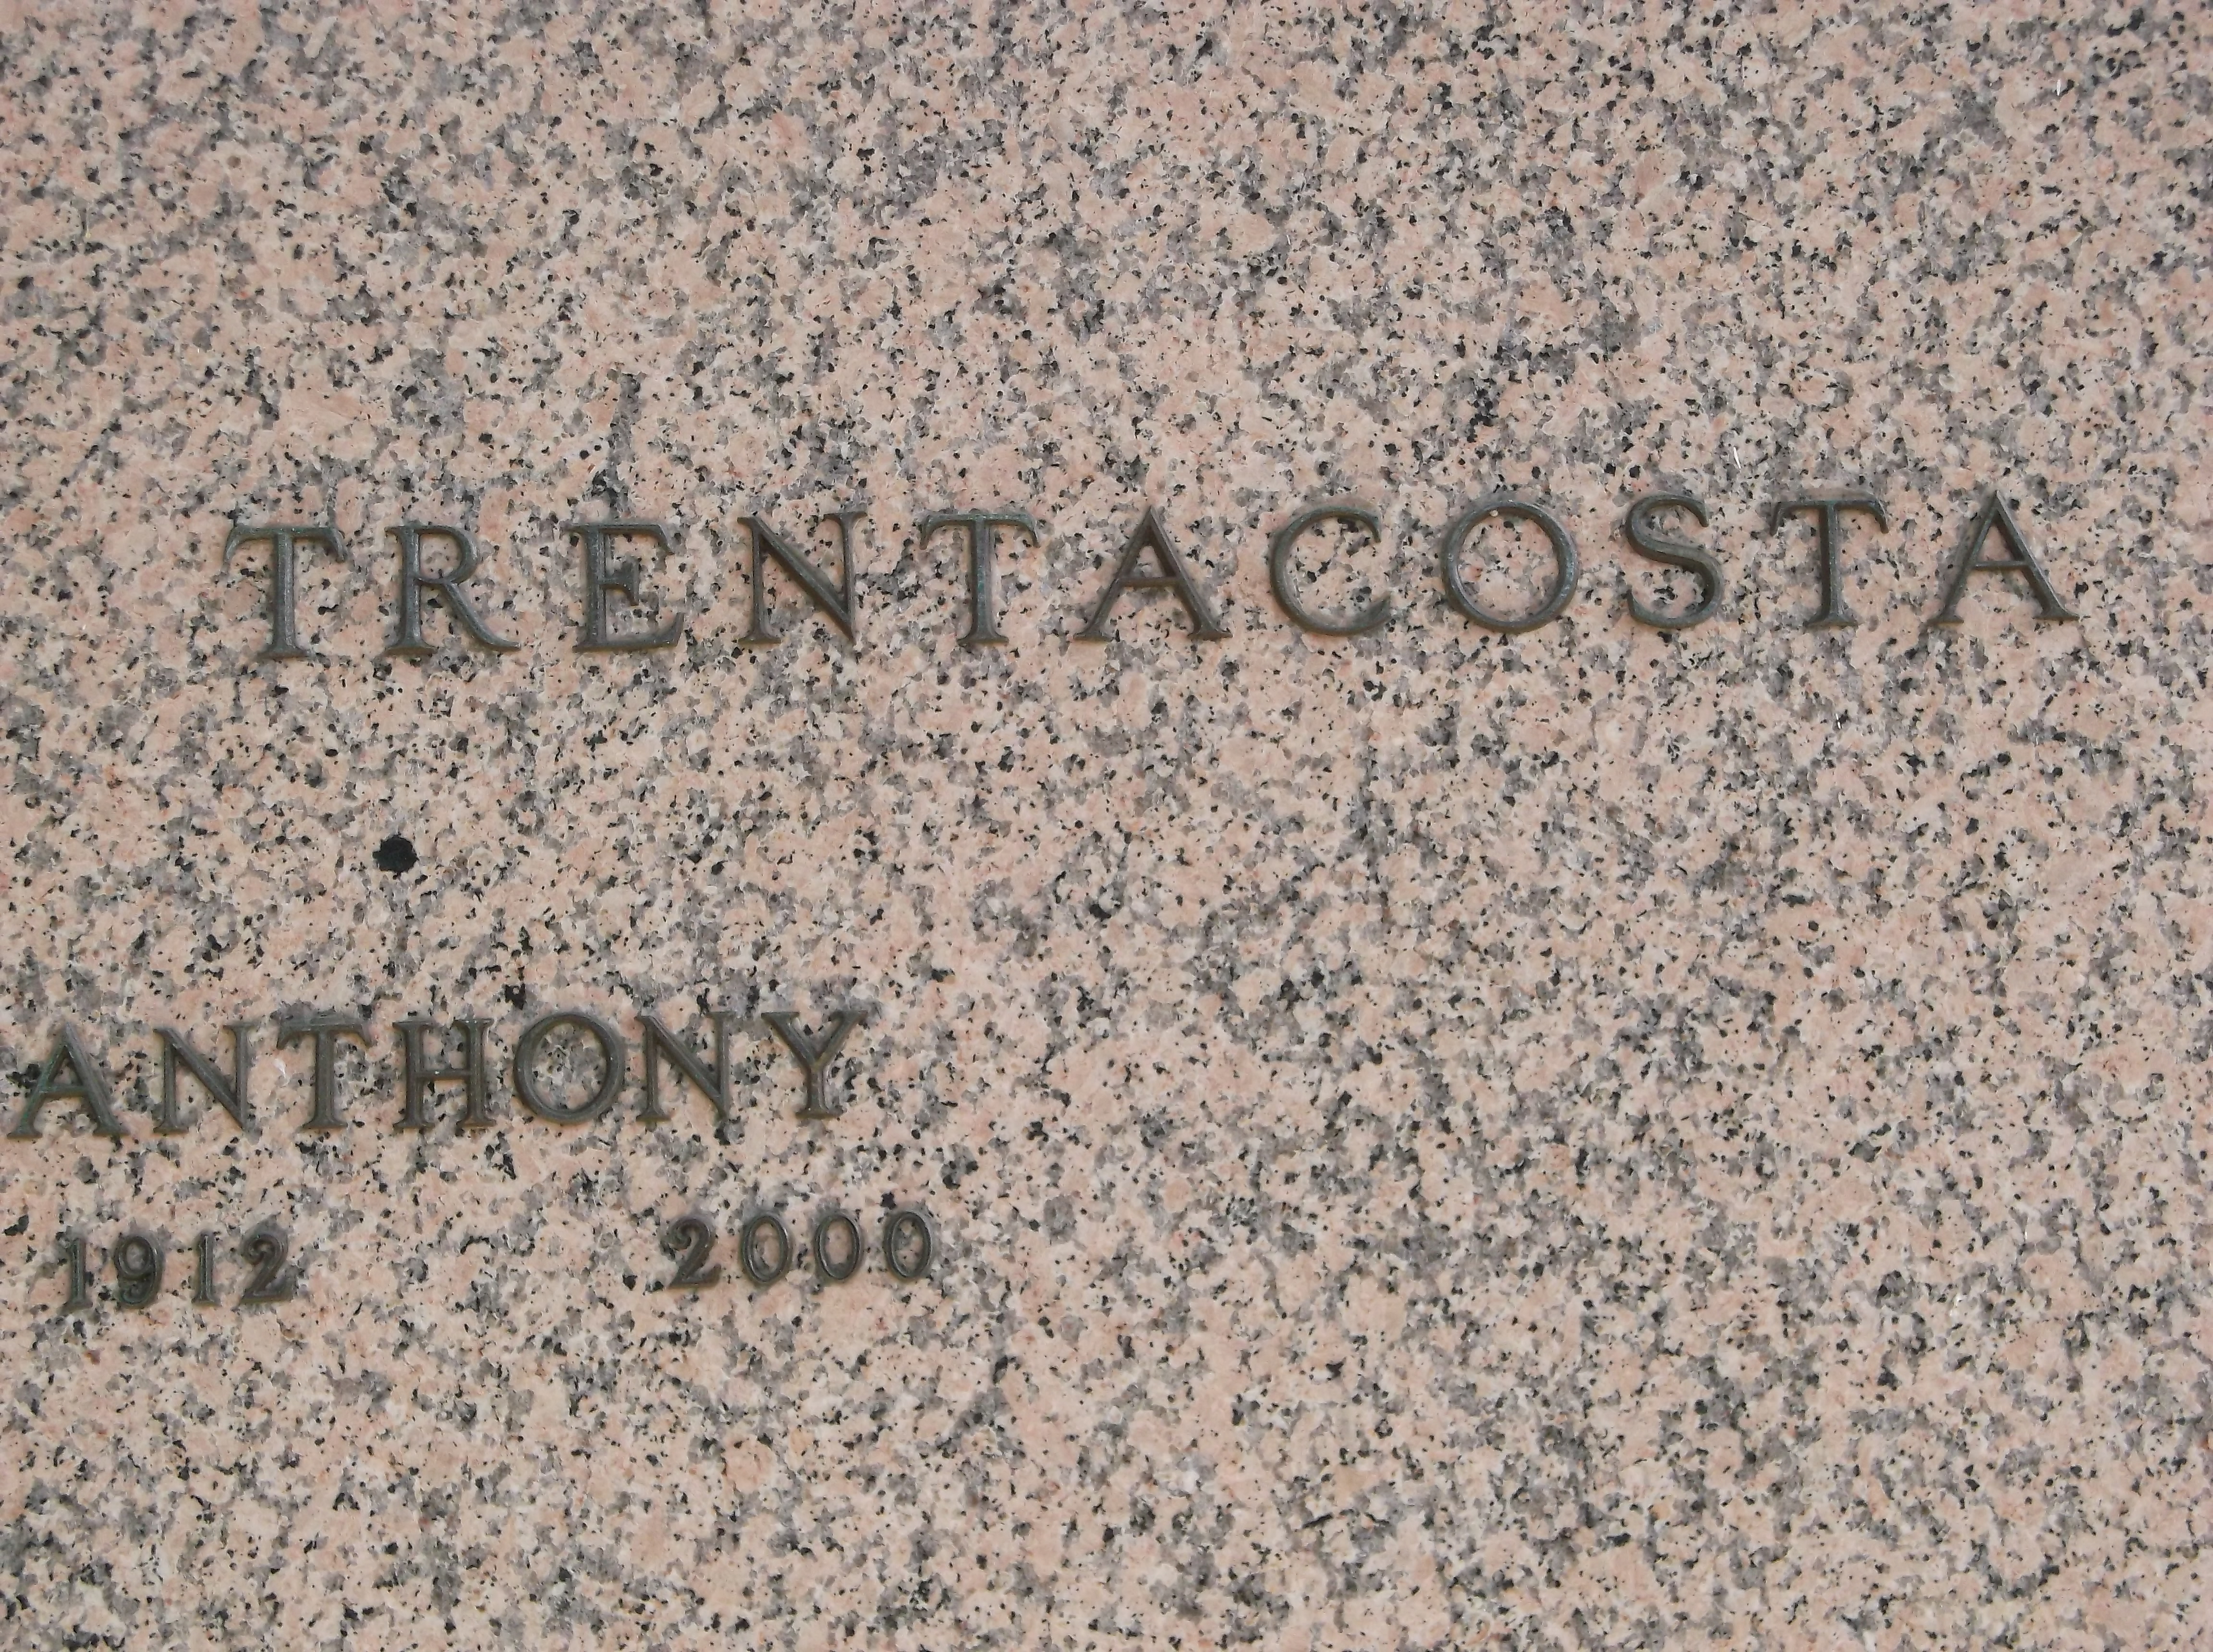 Anthony Trentacosta